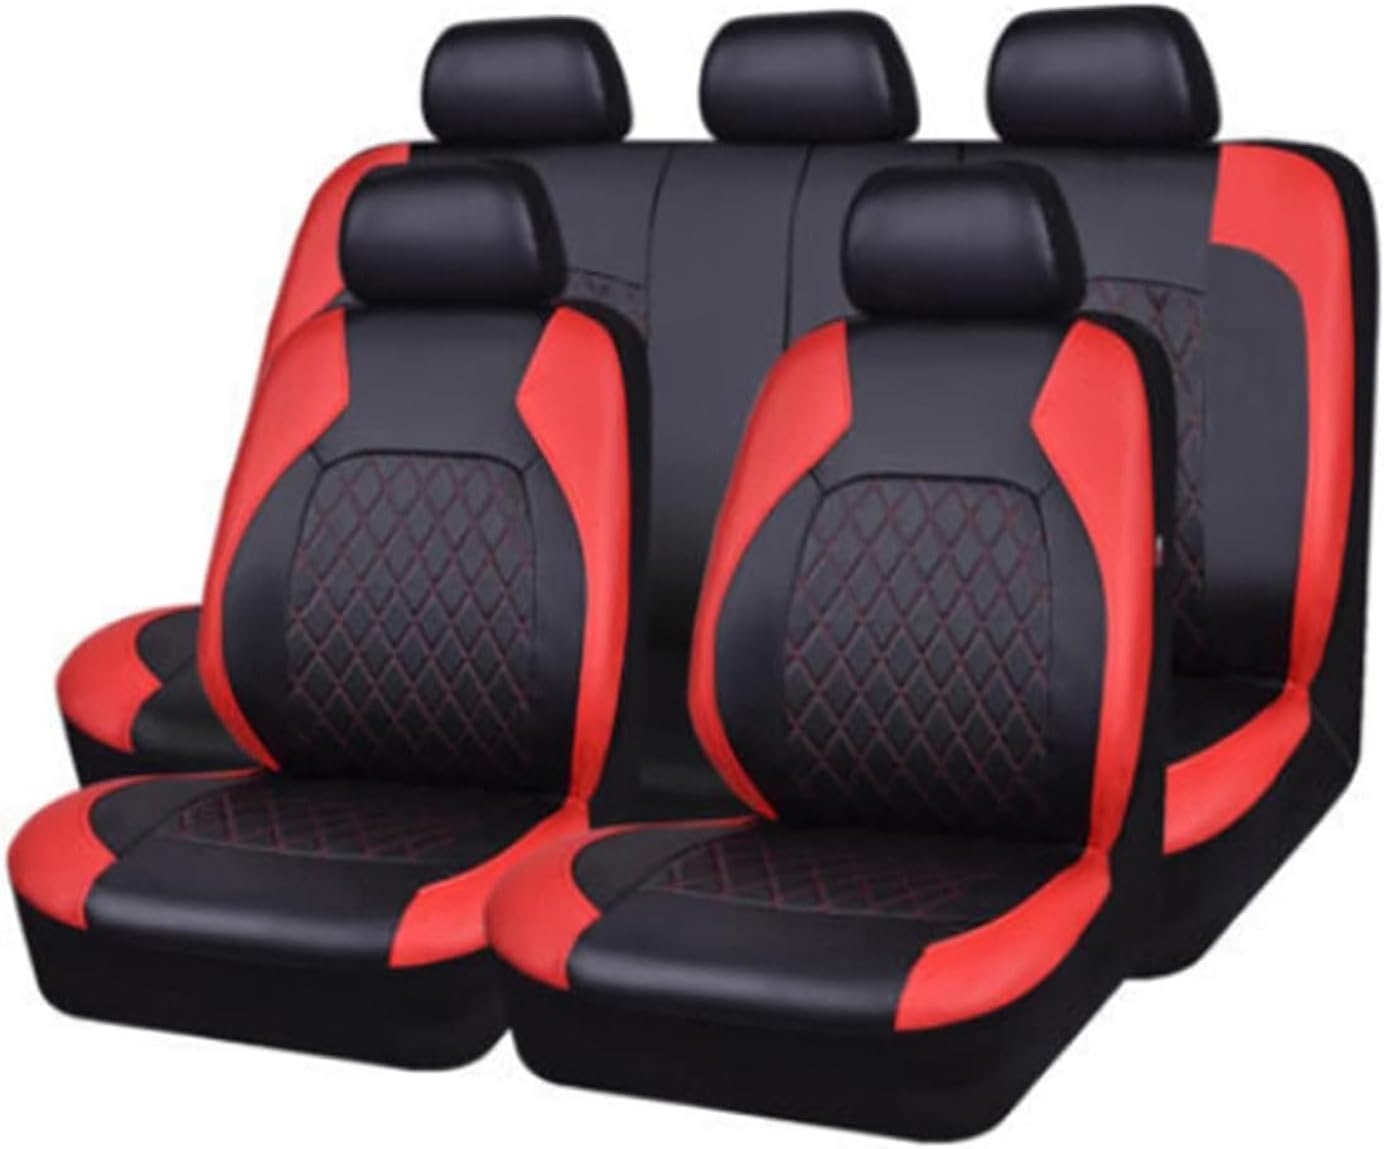 Auto Leder Sitzbezüge für Isuzu D-Max, 9 Stück Allwetter rutschfest Wasserdicht Atmungsaktiv Schonbezug Set Sitzkissenschutz,D/red von SARCX